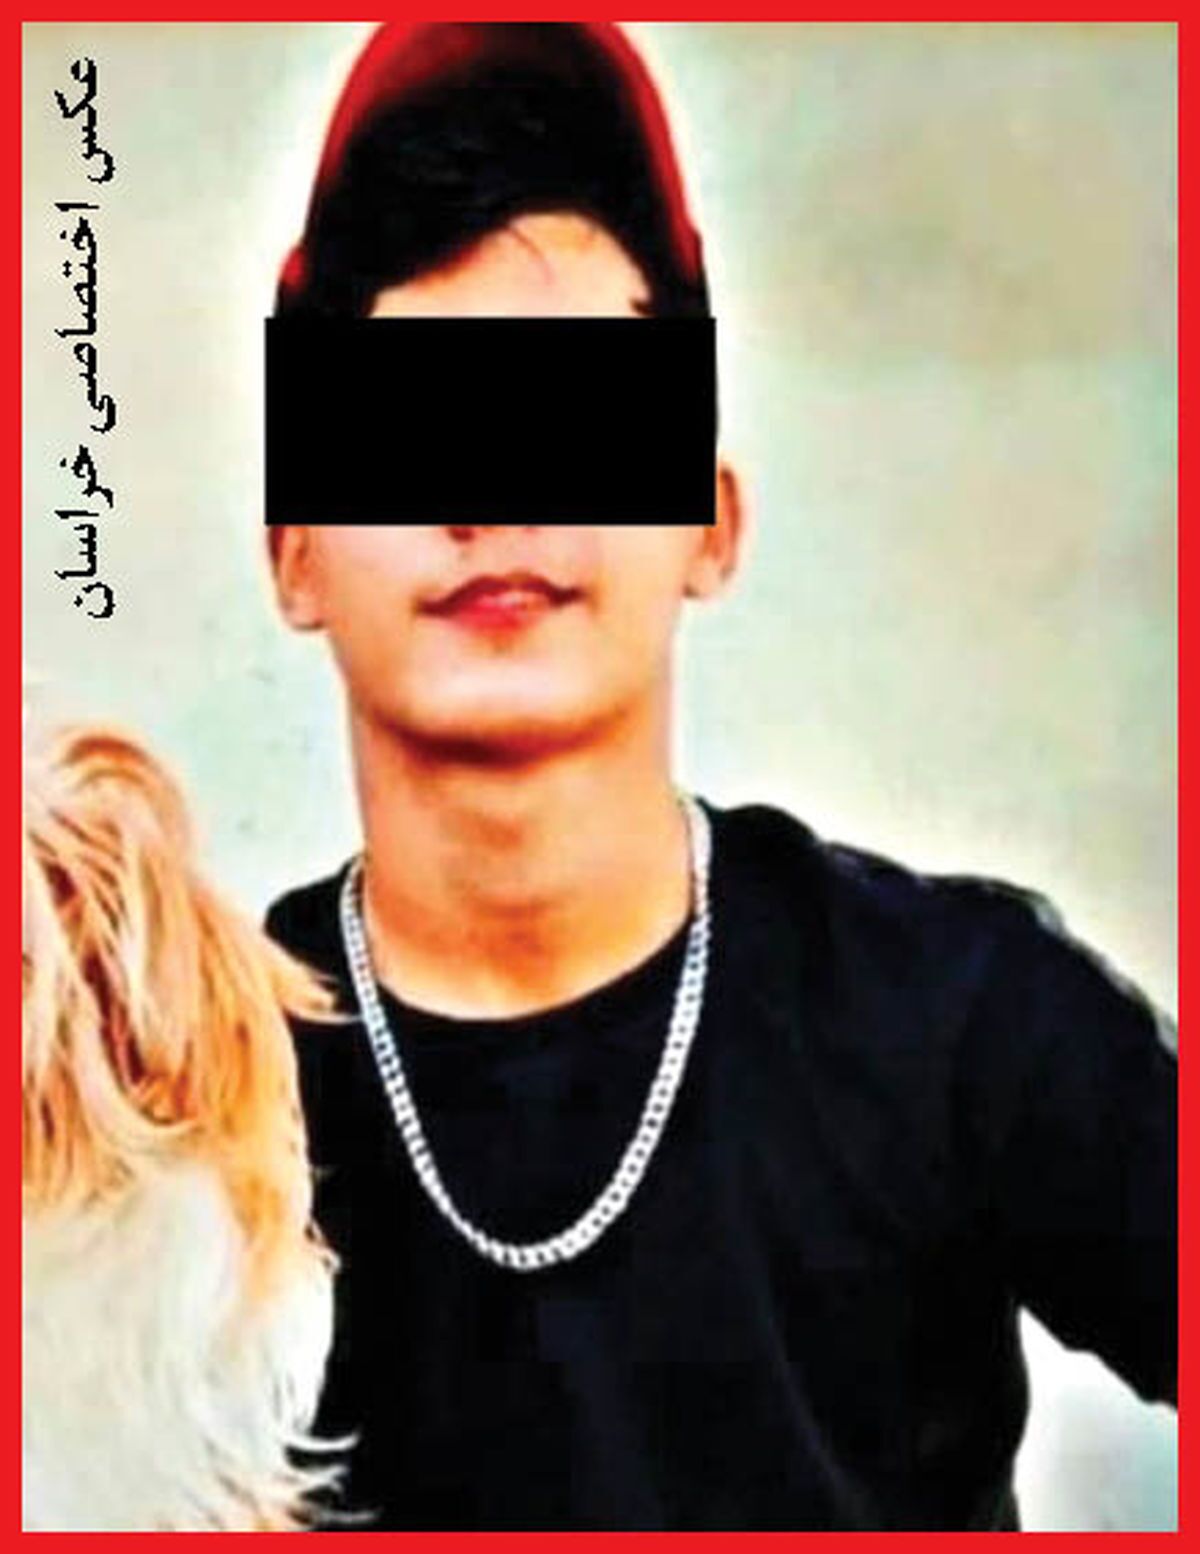  قاتل ۱۸ ساله در نقطه صفر مرزی بازداشت شد +عکس